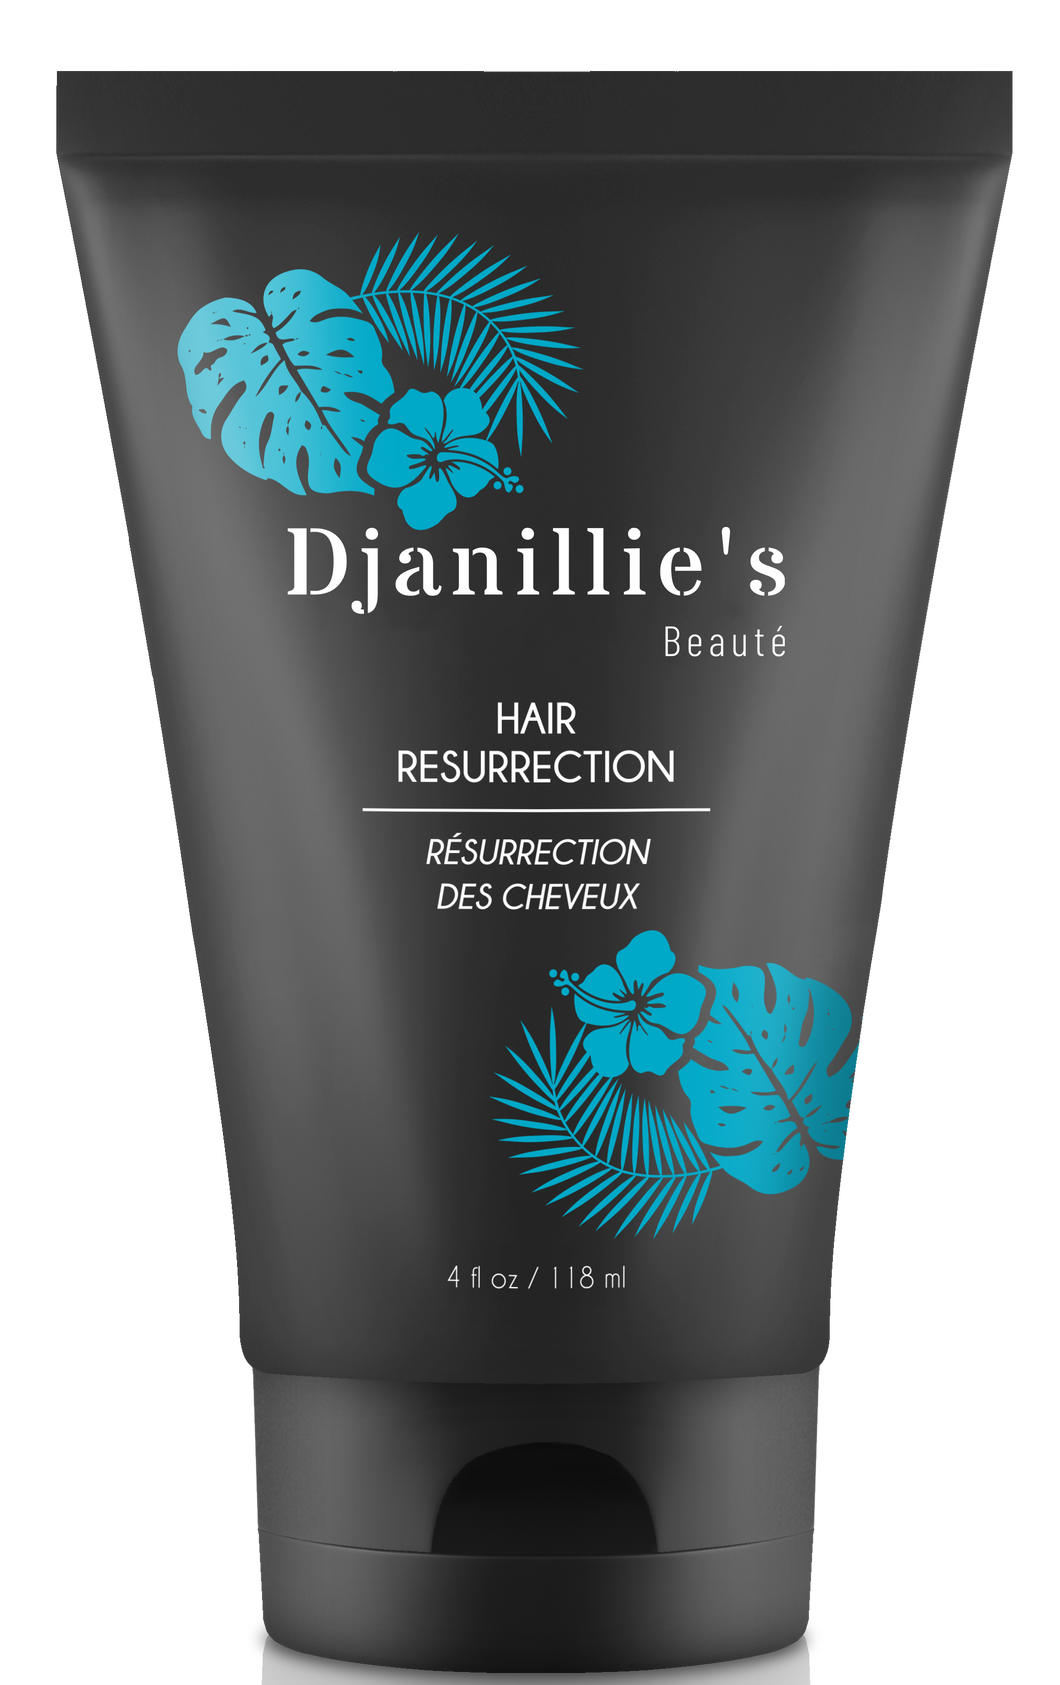 Hair Resurrection Treatment - Djanillie's Beauté